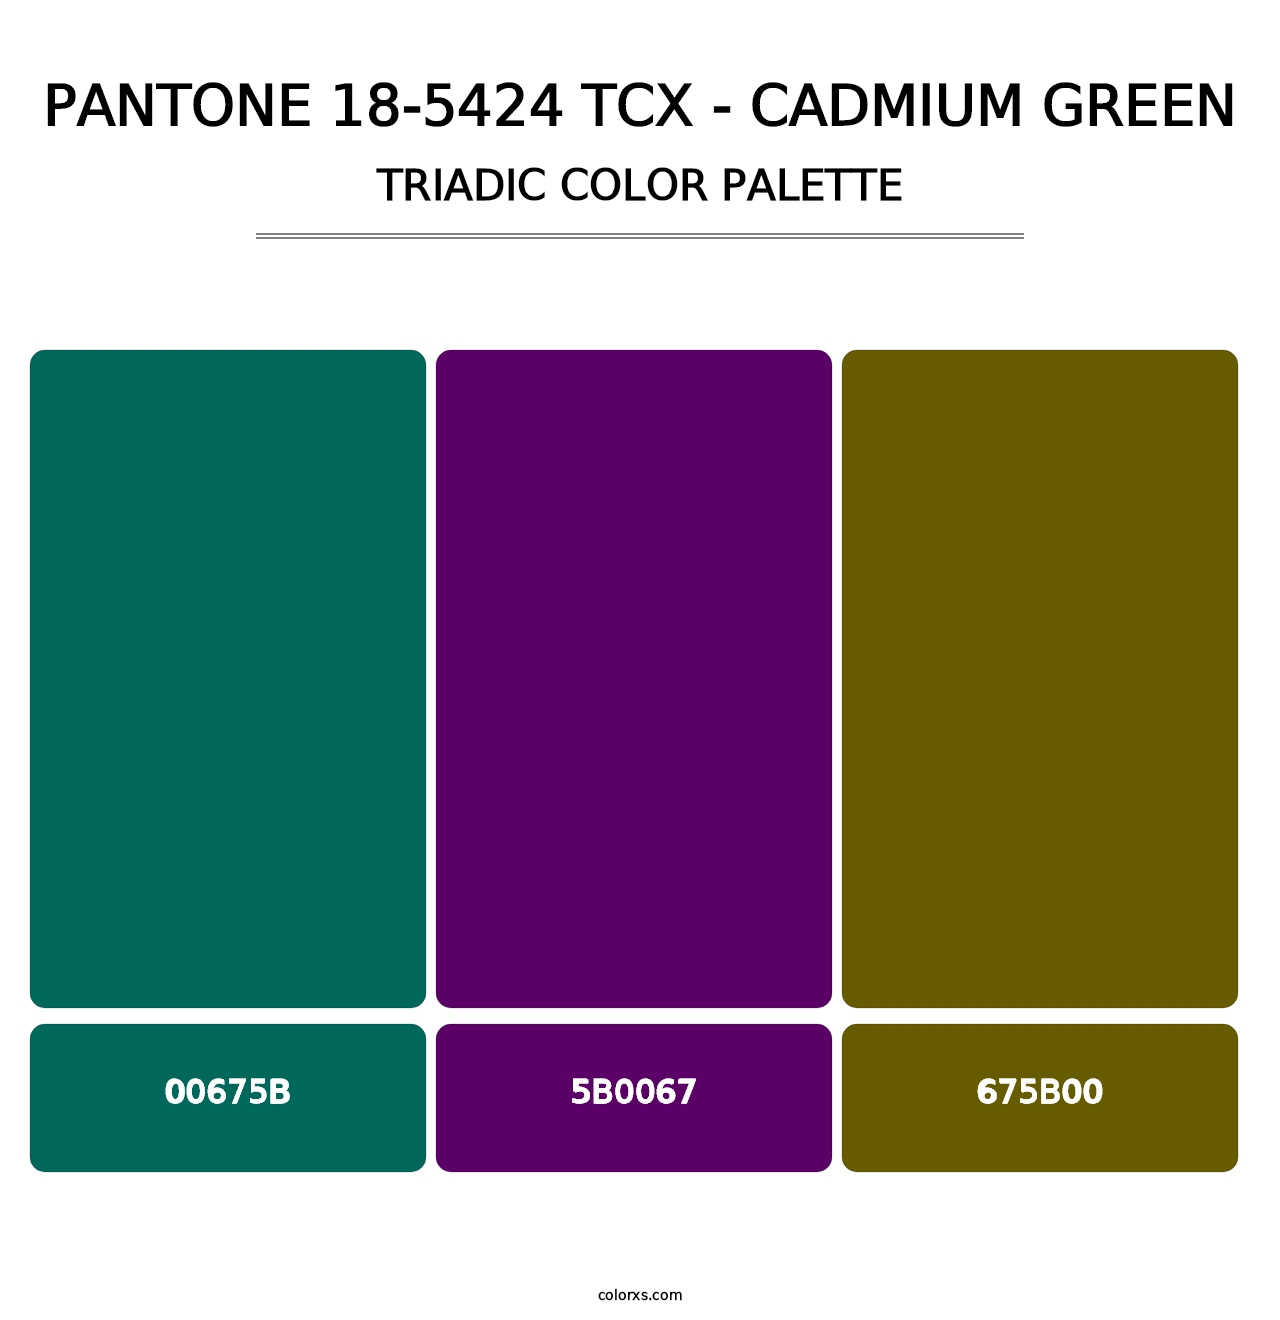 PANTONE 18-5424 TCX - Cadmium Green - Triadic Color Palette